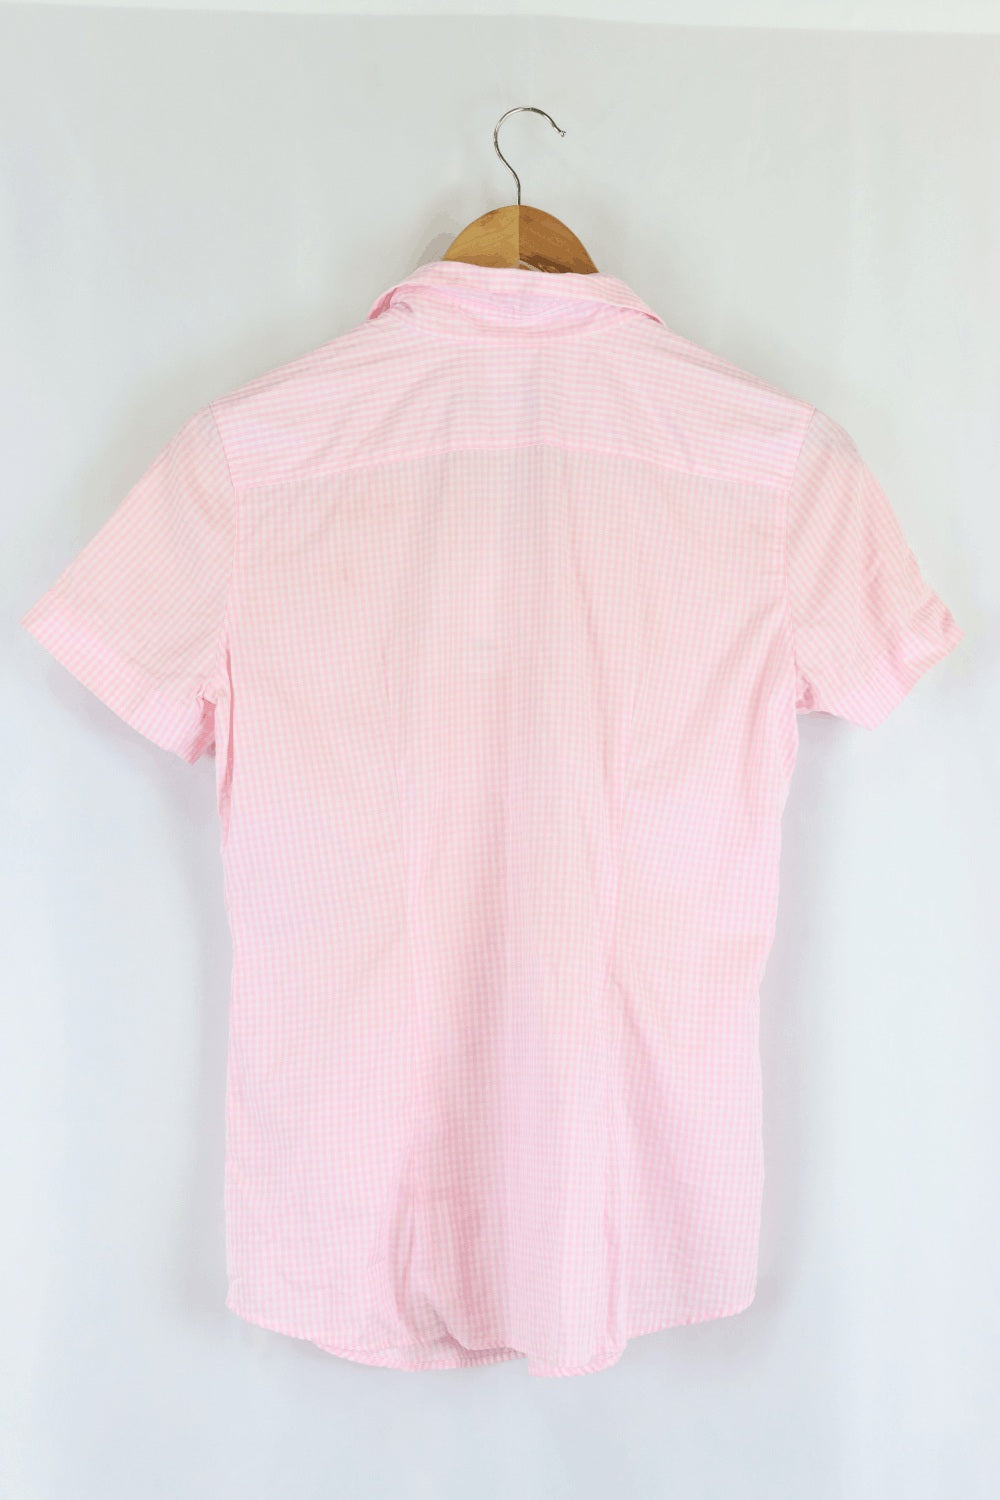 Herringbone Pink Check Short Sleeve Top 8